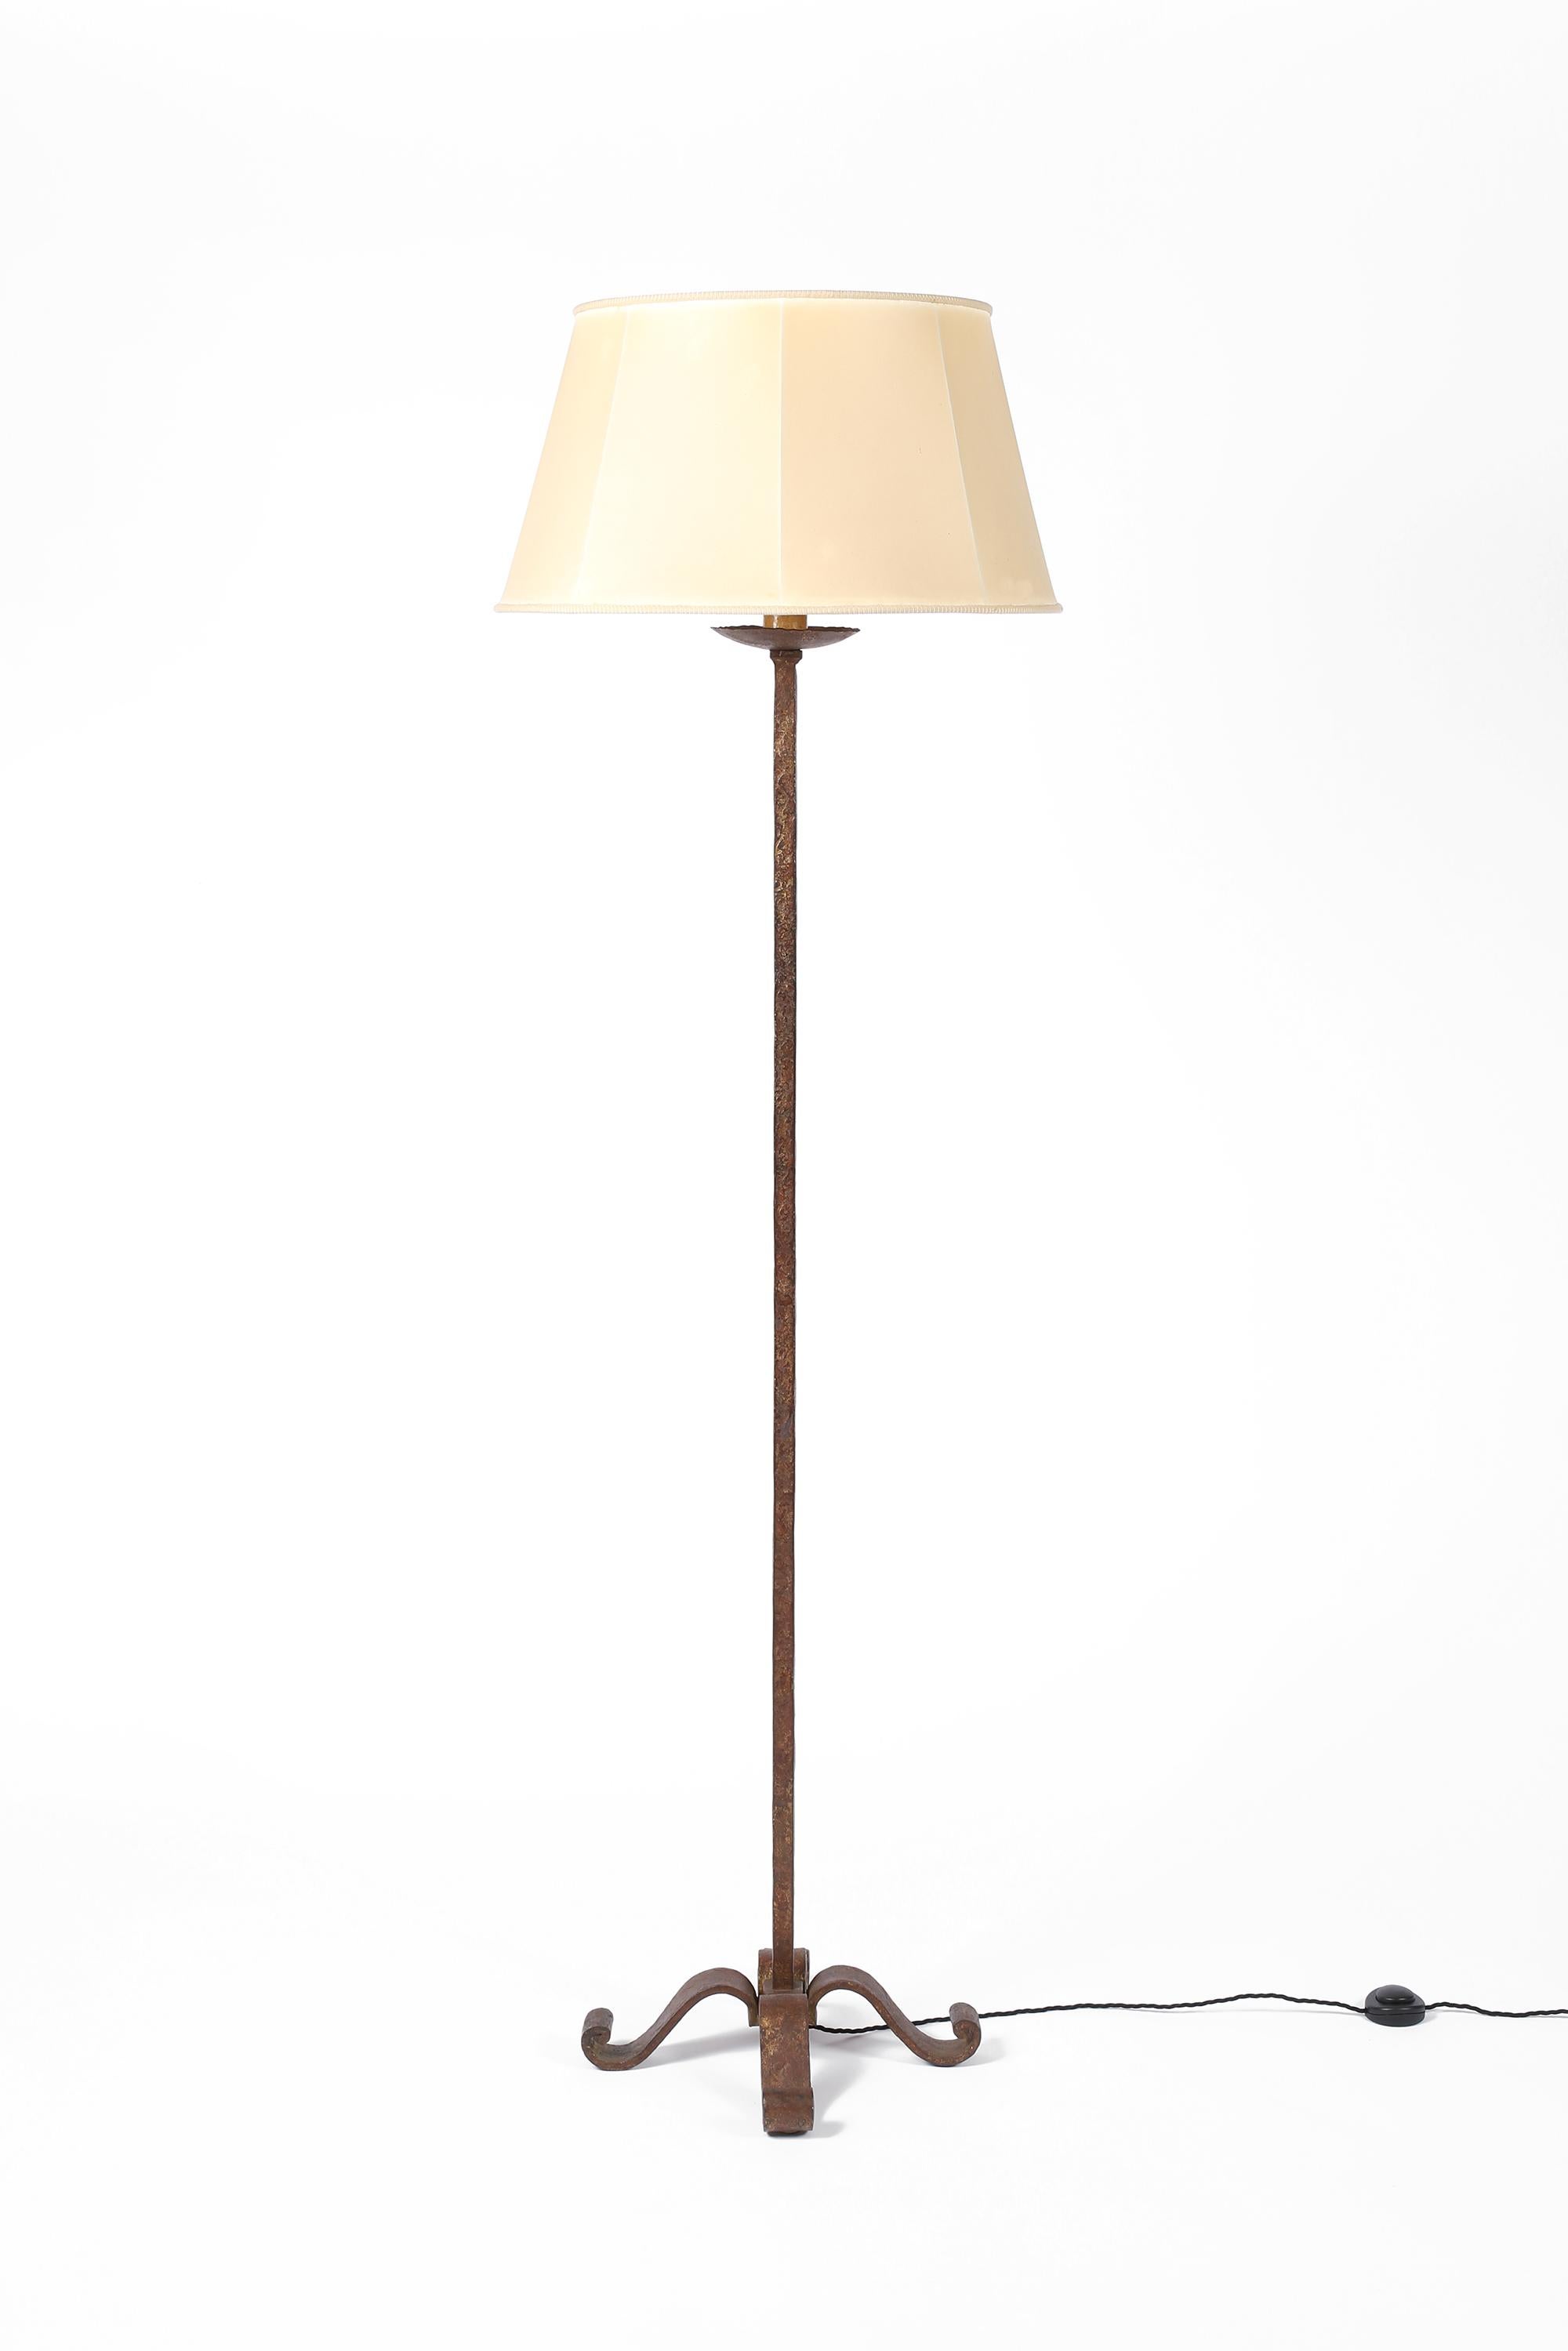 Eine schicke, große Stehlampe aus Schmiedeeisen mit einfachem Stiel und dekorativem, geschwungenem Fuß von Maison Ramsay - Paris. Die Lampe ist wunderschön patiniert, mit sichtbaren Resten der ursprünglichen Vergoldung, und hat ihren ursprünglichen